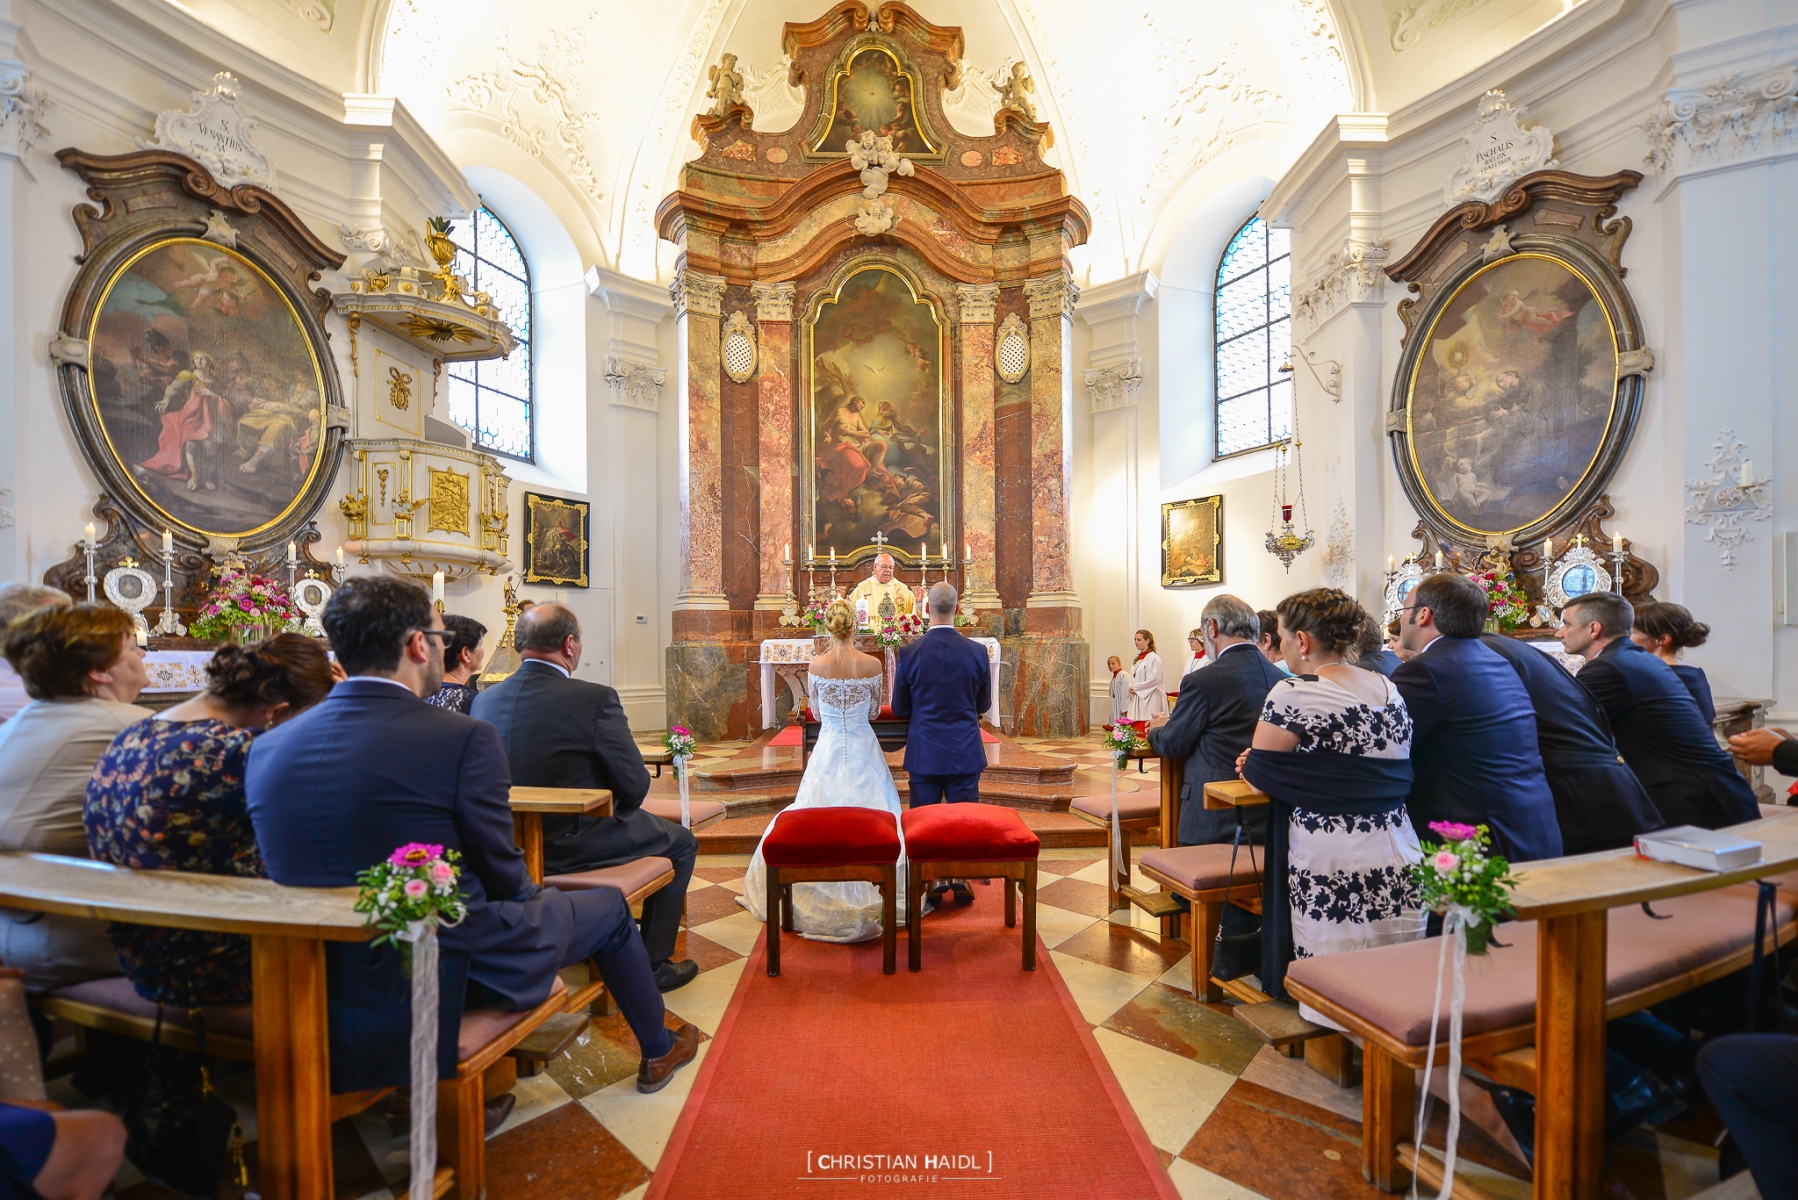 Hochzeitsfotograf im Landkreis Passau, Waldkirchen & Freyung-Grafenau